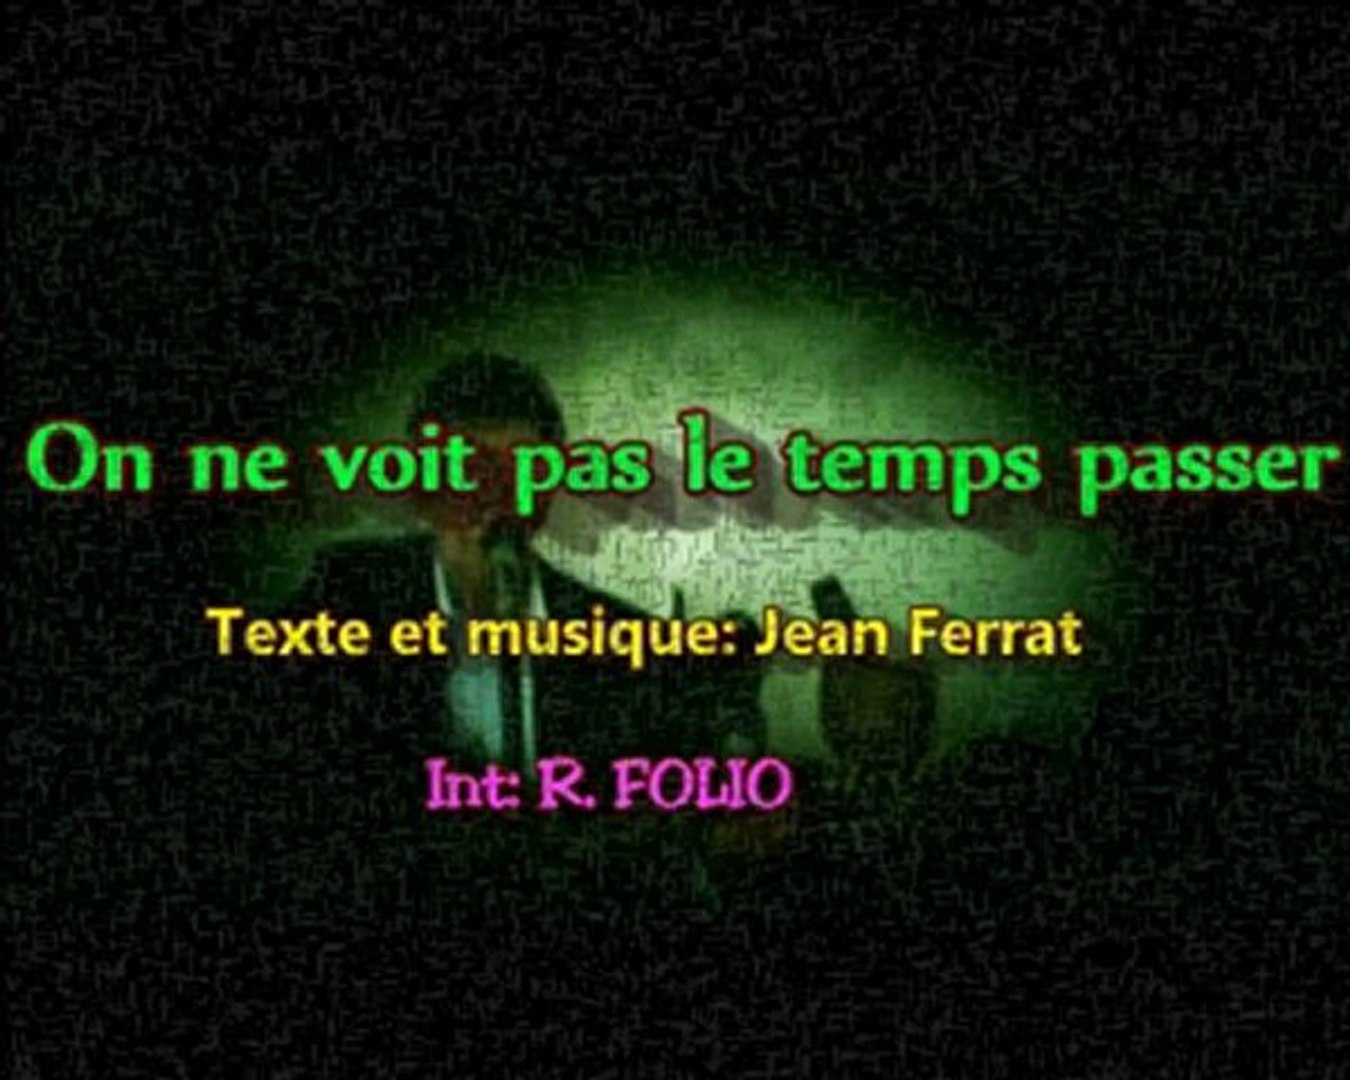 ON NE VOIT PAS LE TEMPS PASSER (Jean FERRAT) - Vidéo Dailymotion